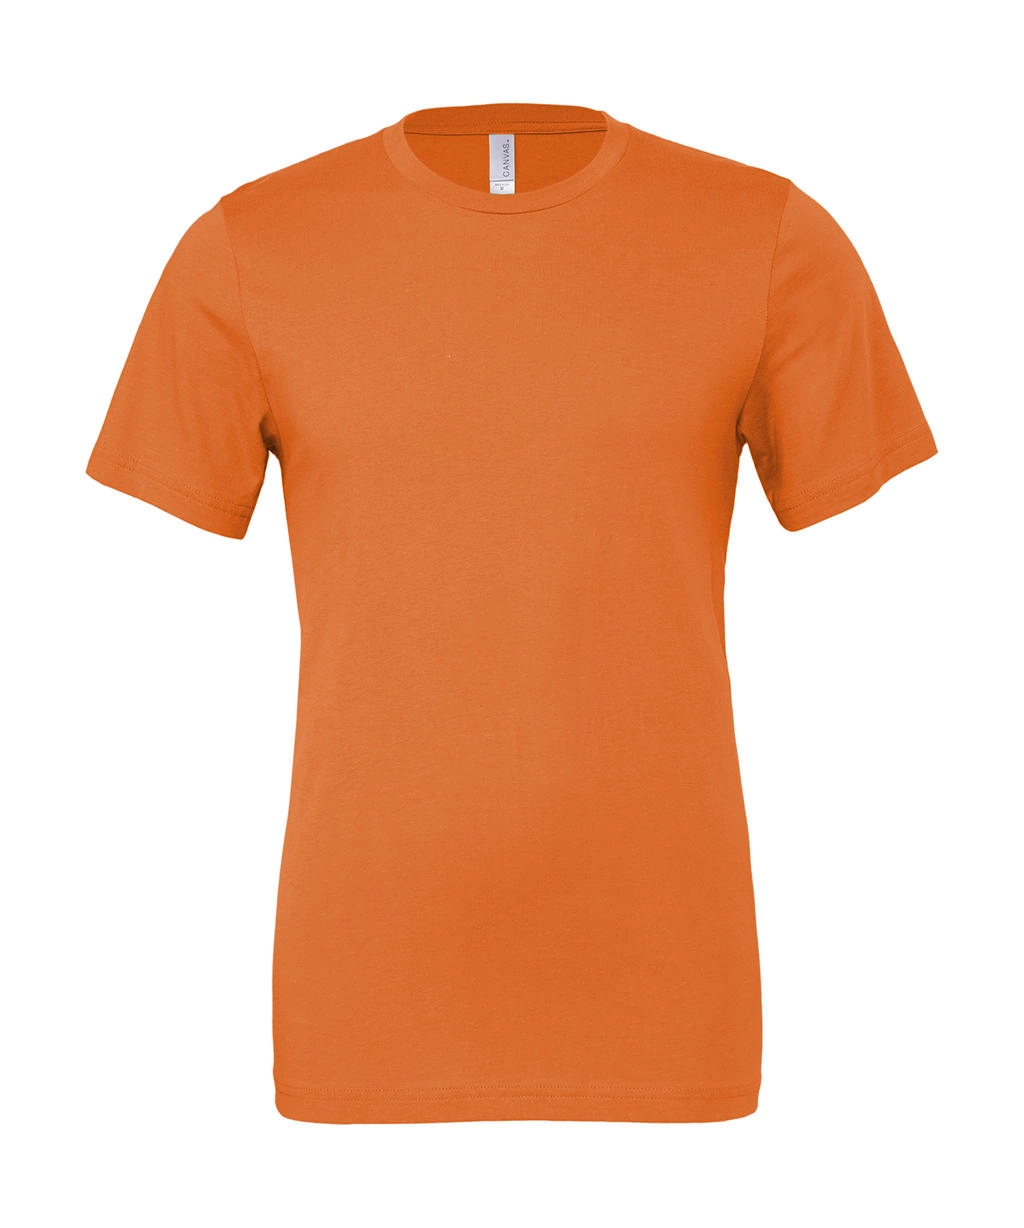 Unisex Jersey Short Sleeve Tee zum Besticken und Bedrucken in der Farbe Orange mit Ihren Logo, Schriftzug oder Motiv.